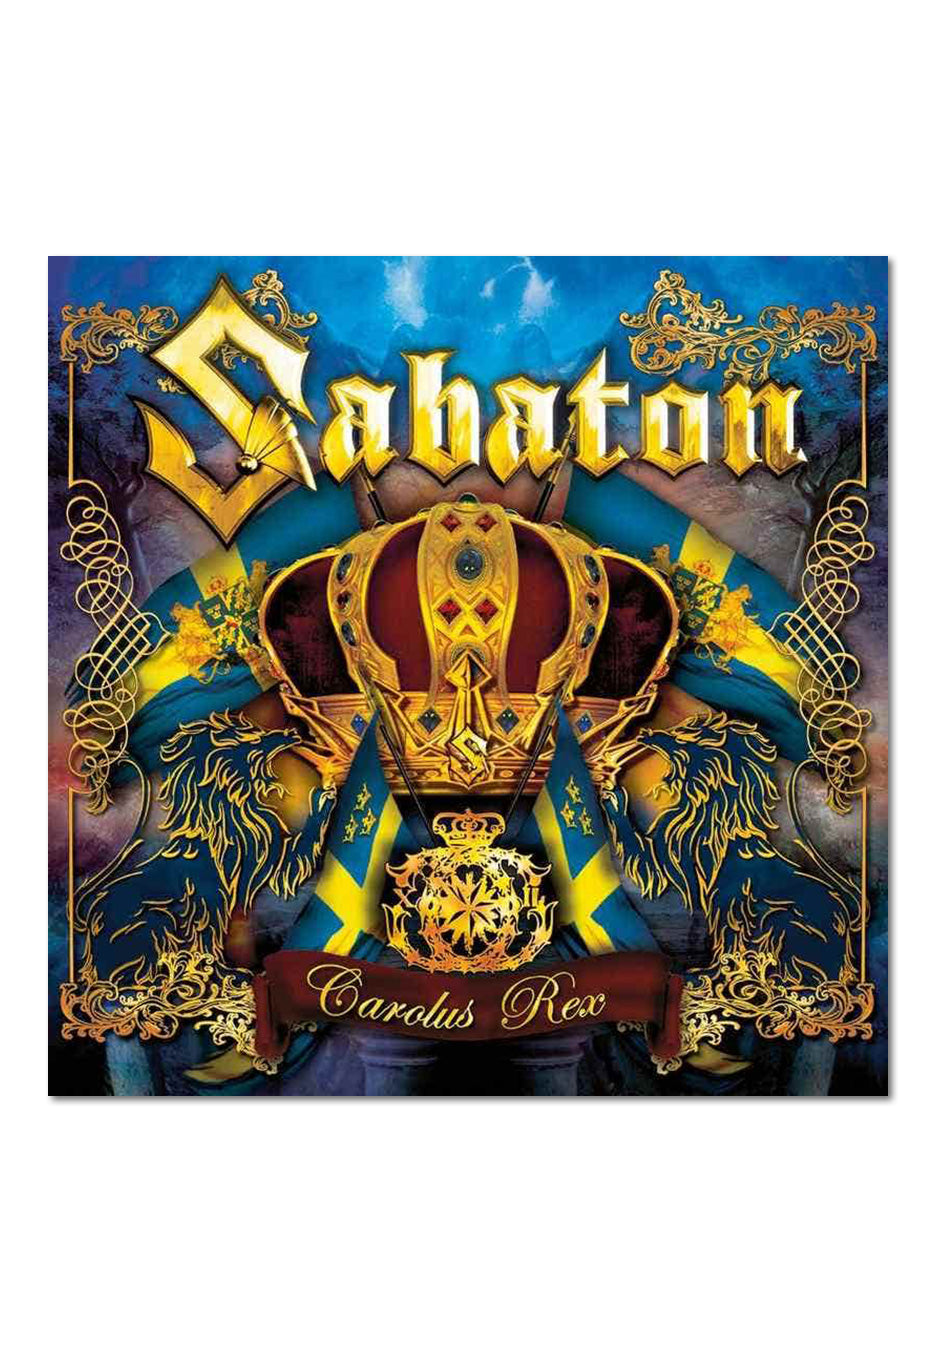 Sabaton - Carolus Rex - CD